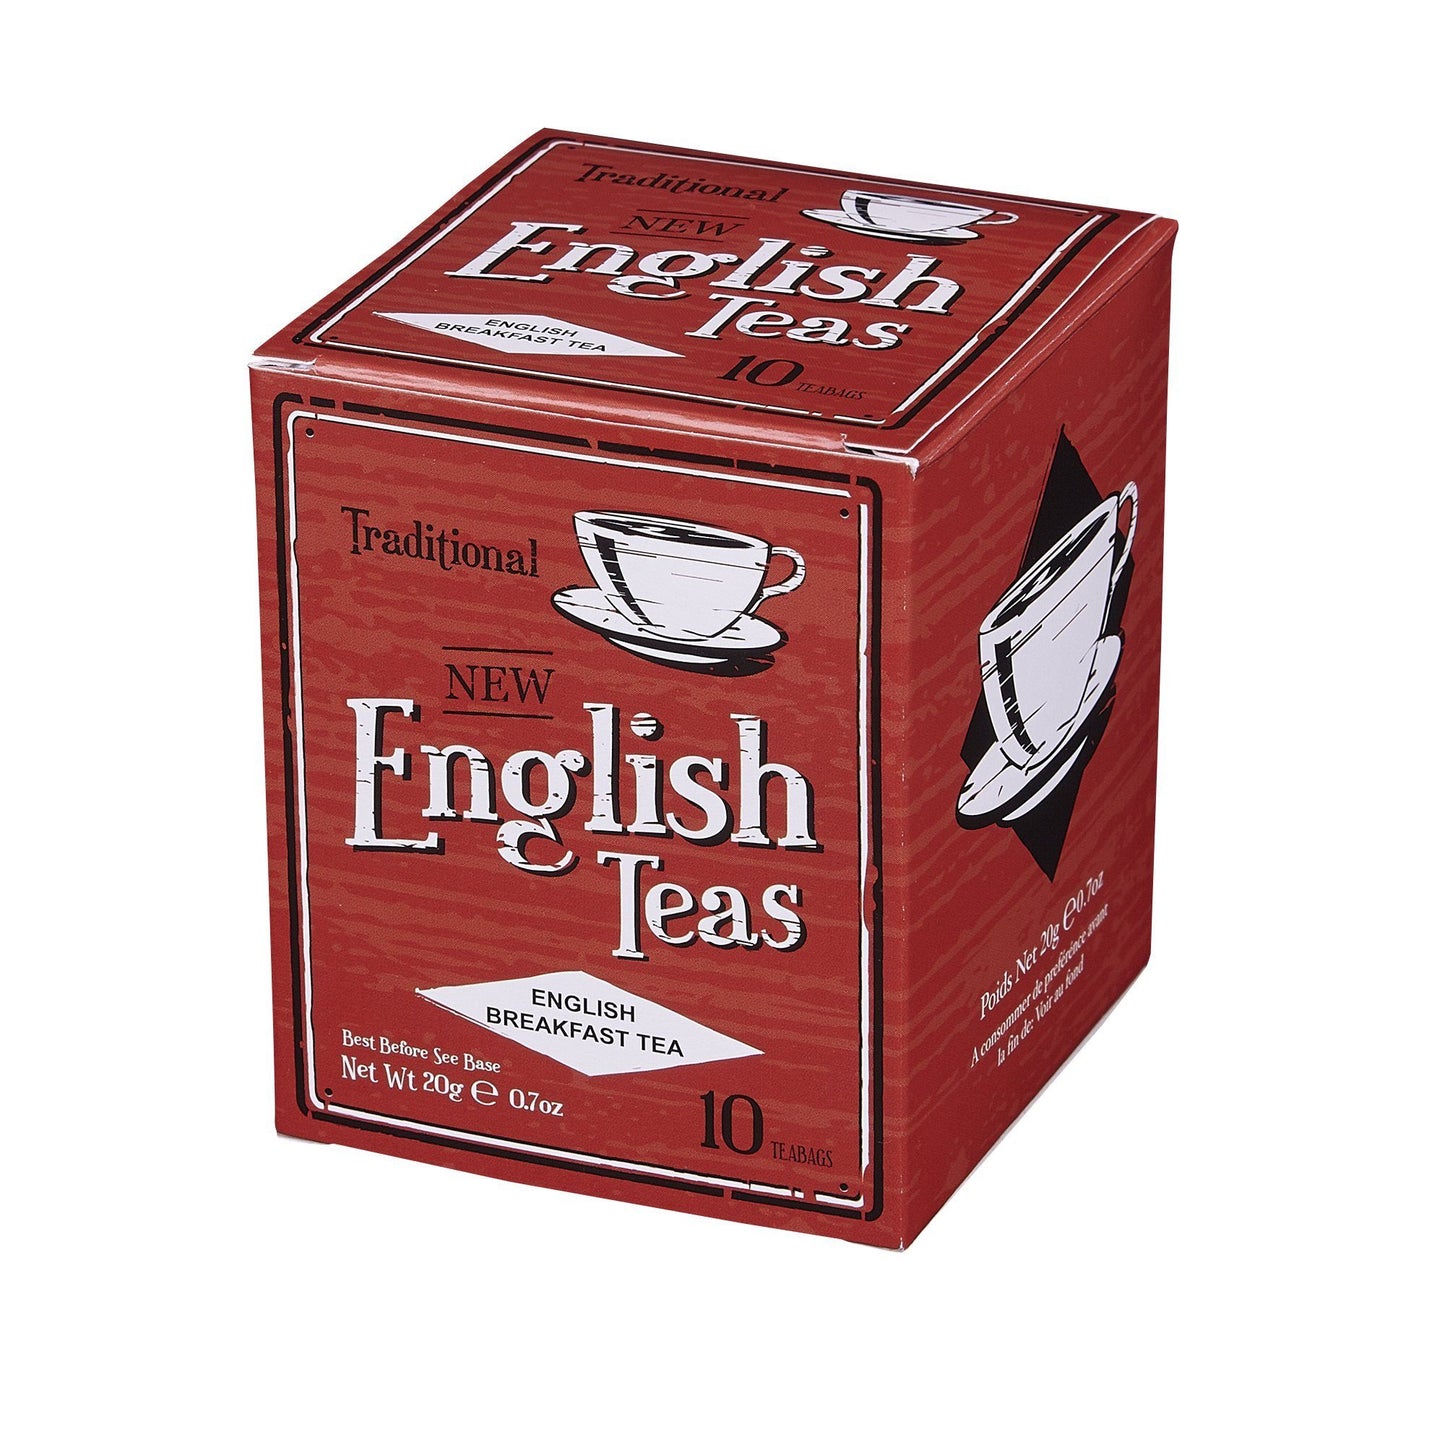 Vintage English Breakfast Tea 10 Teabag Carton Black Tea New English Teas 